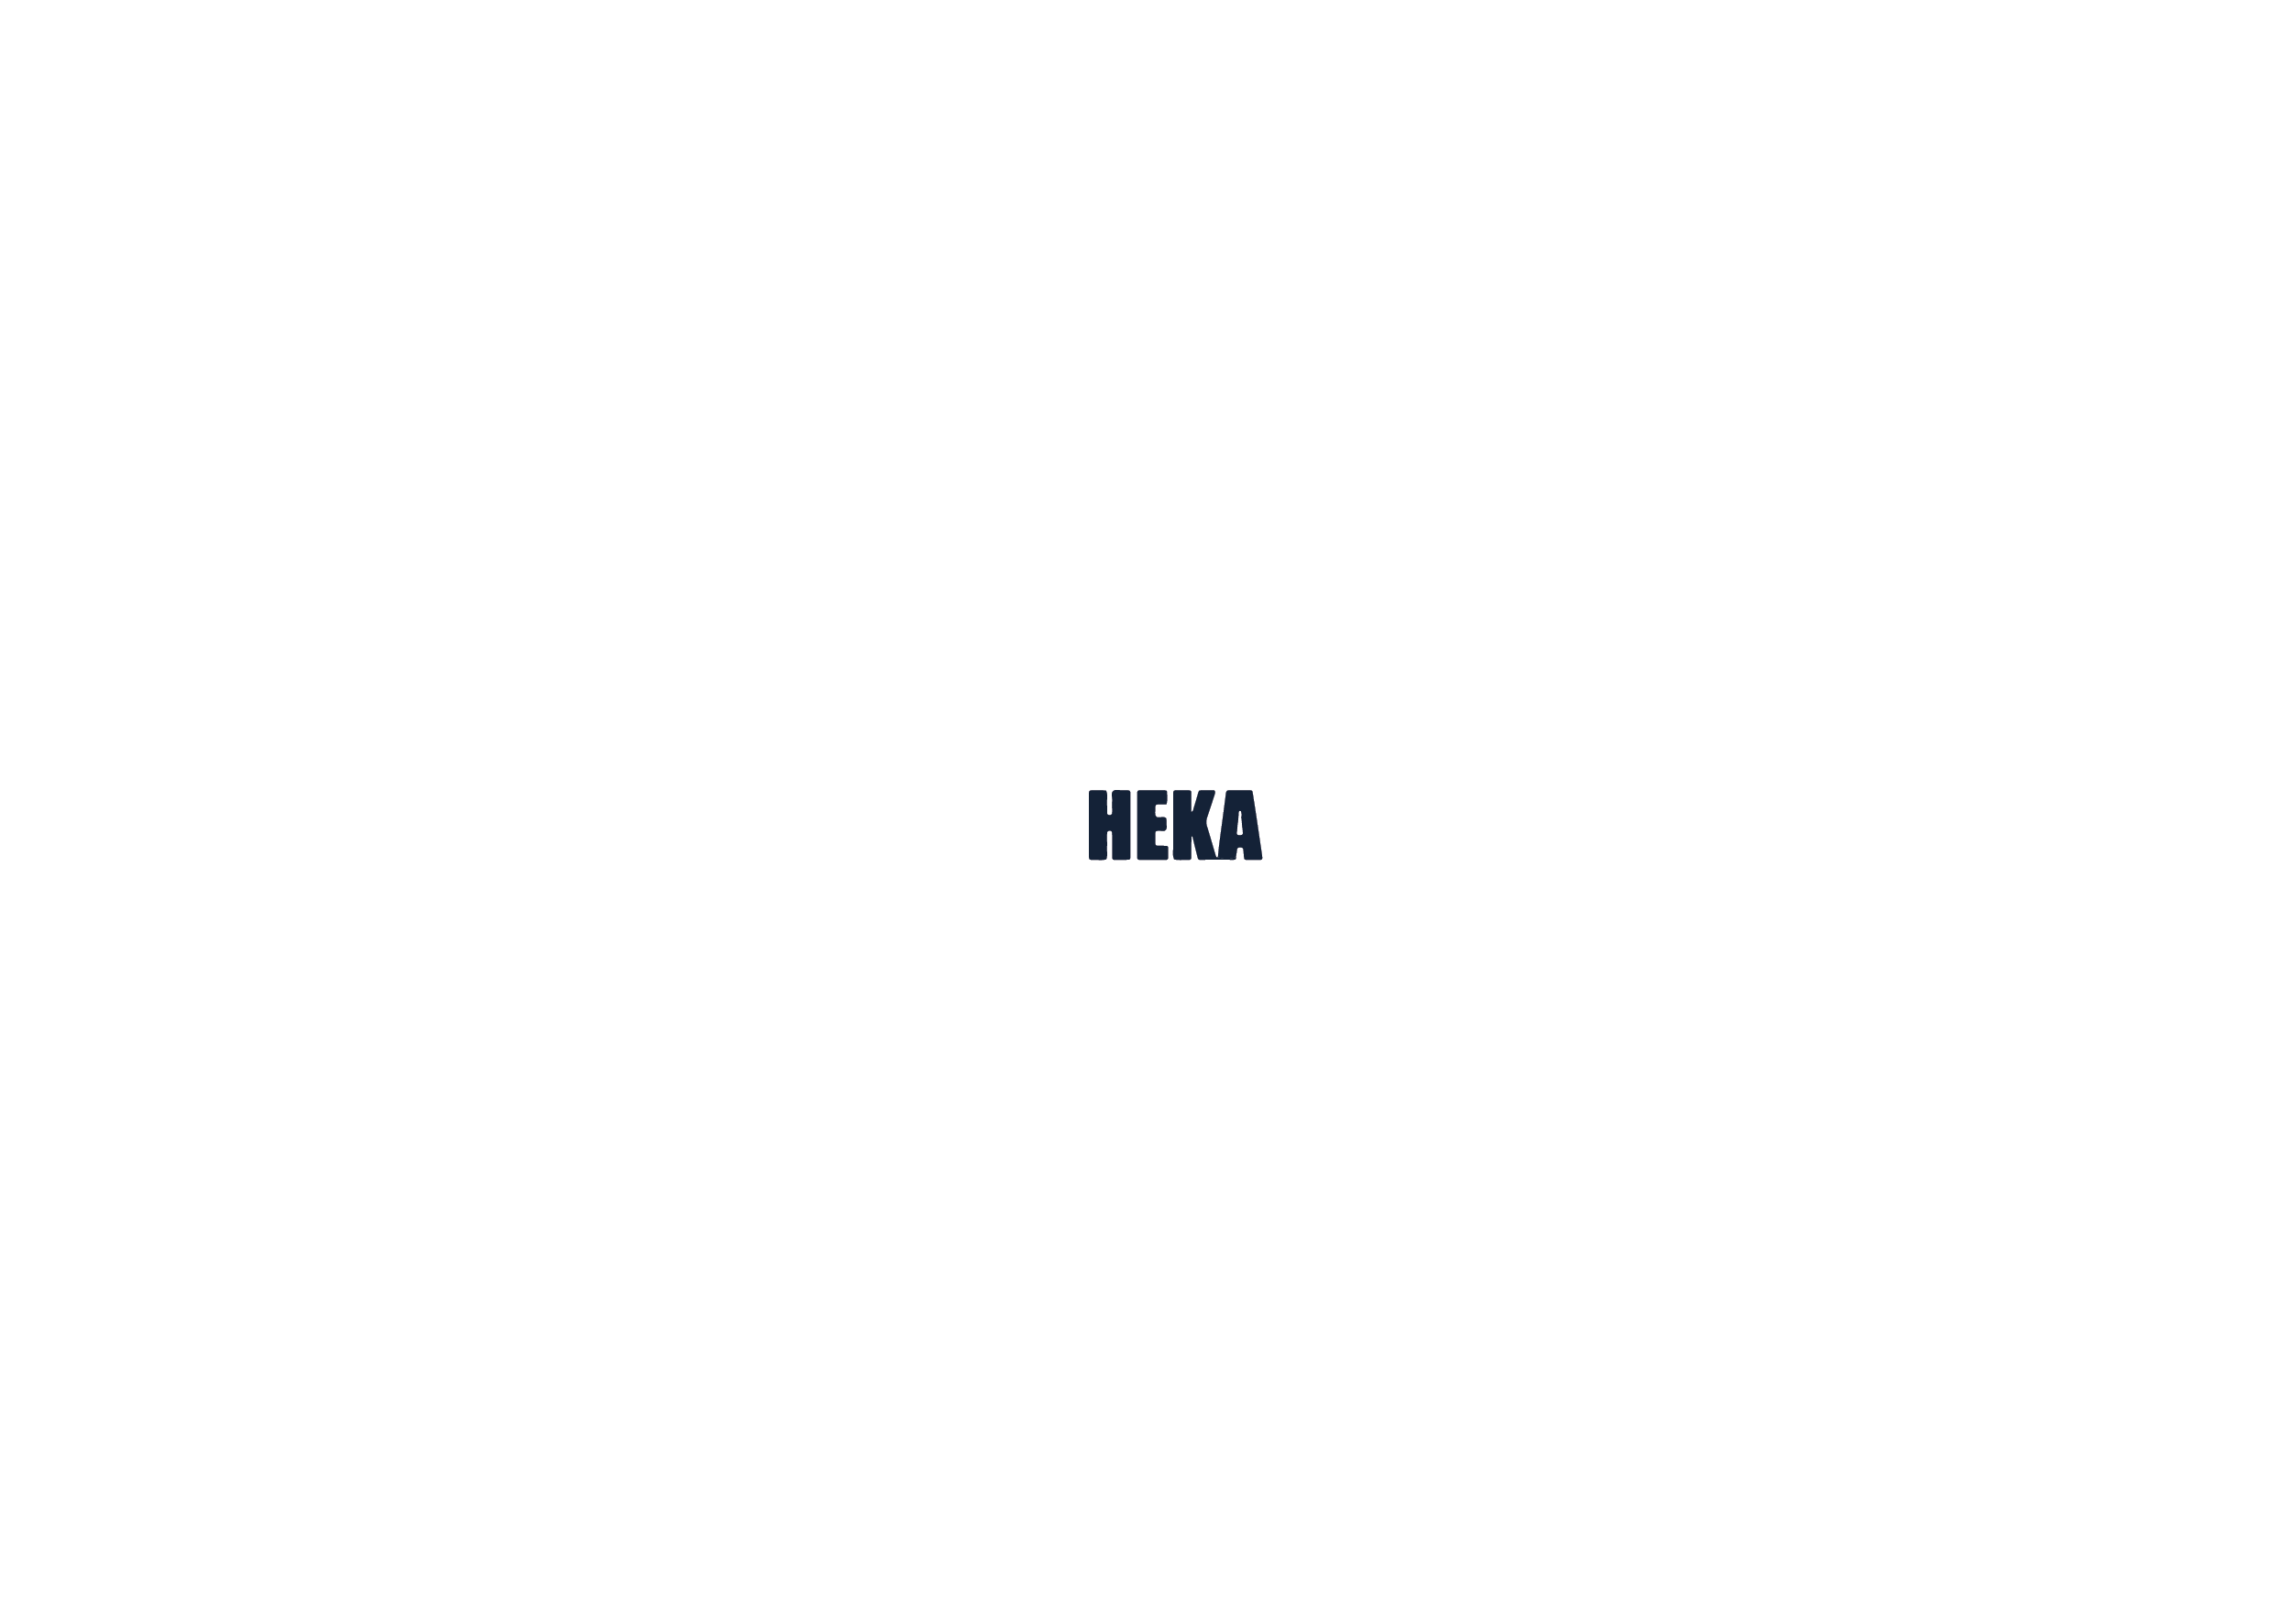 Heka India